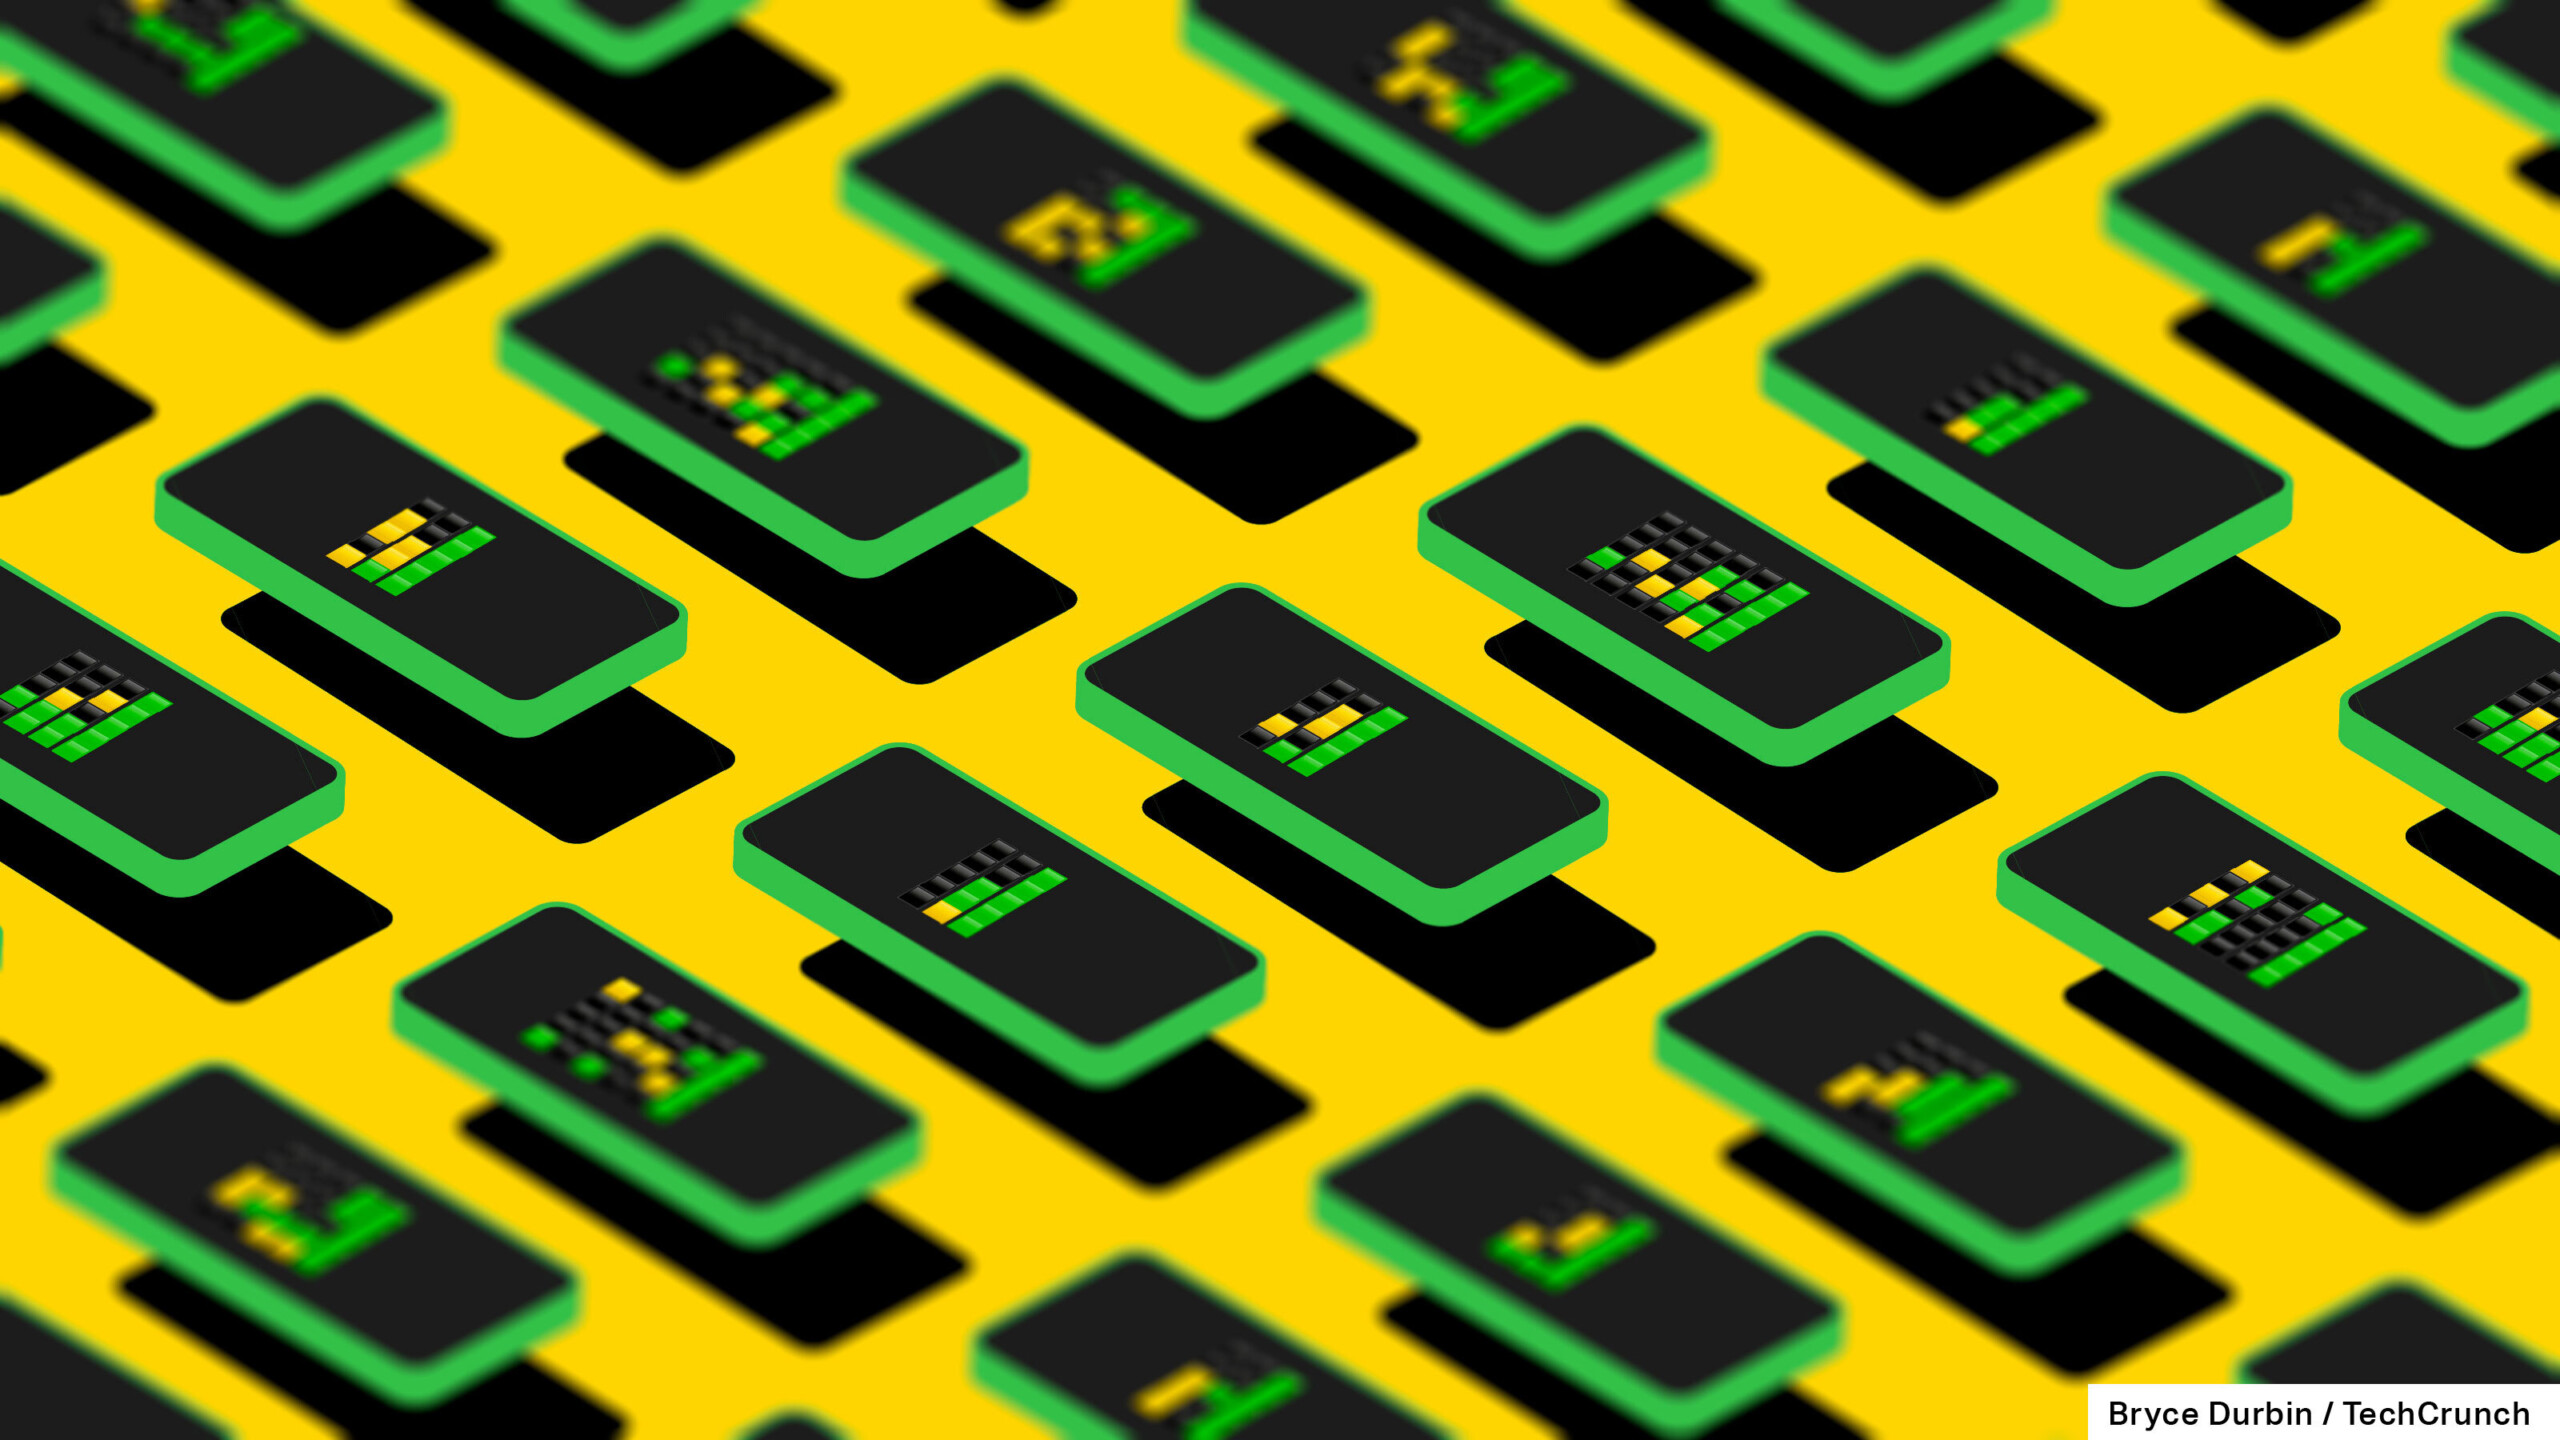 jeu de mots;  une grille de téléphones illustrés avec des carrés verts et jaunes dessus